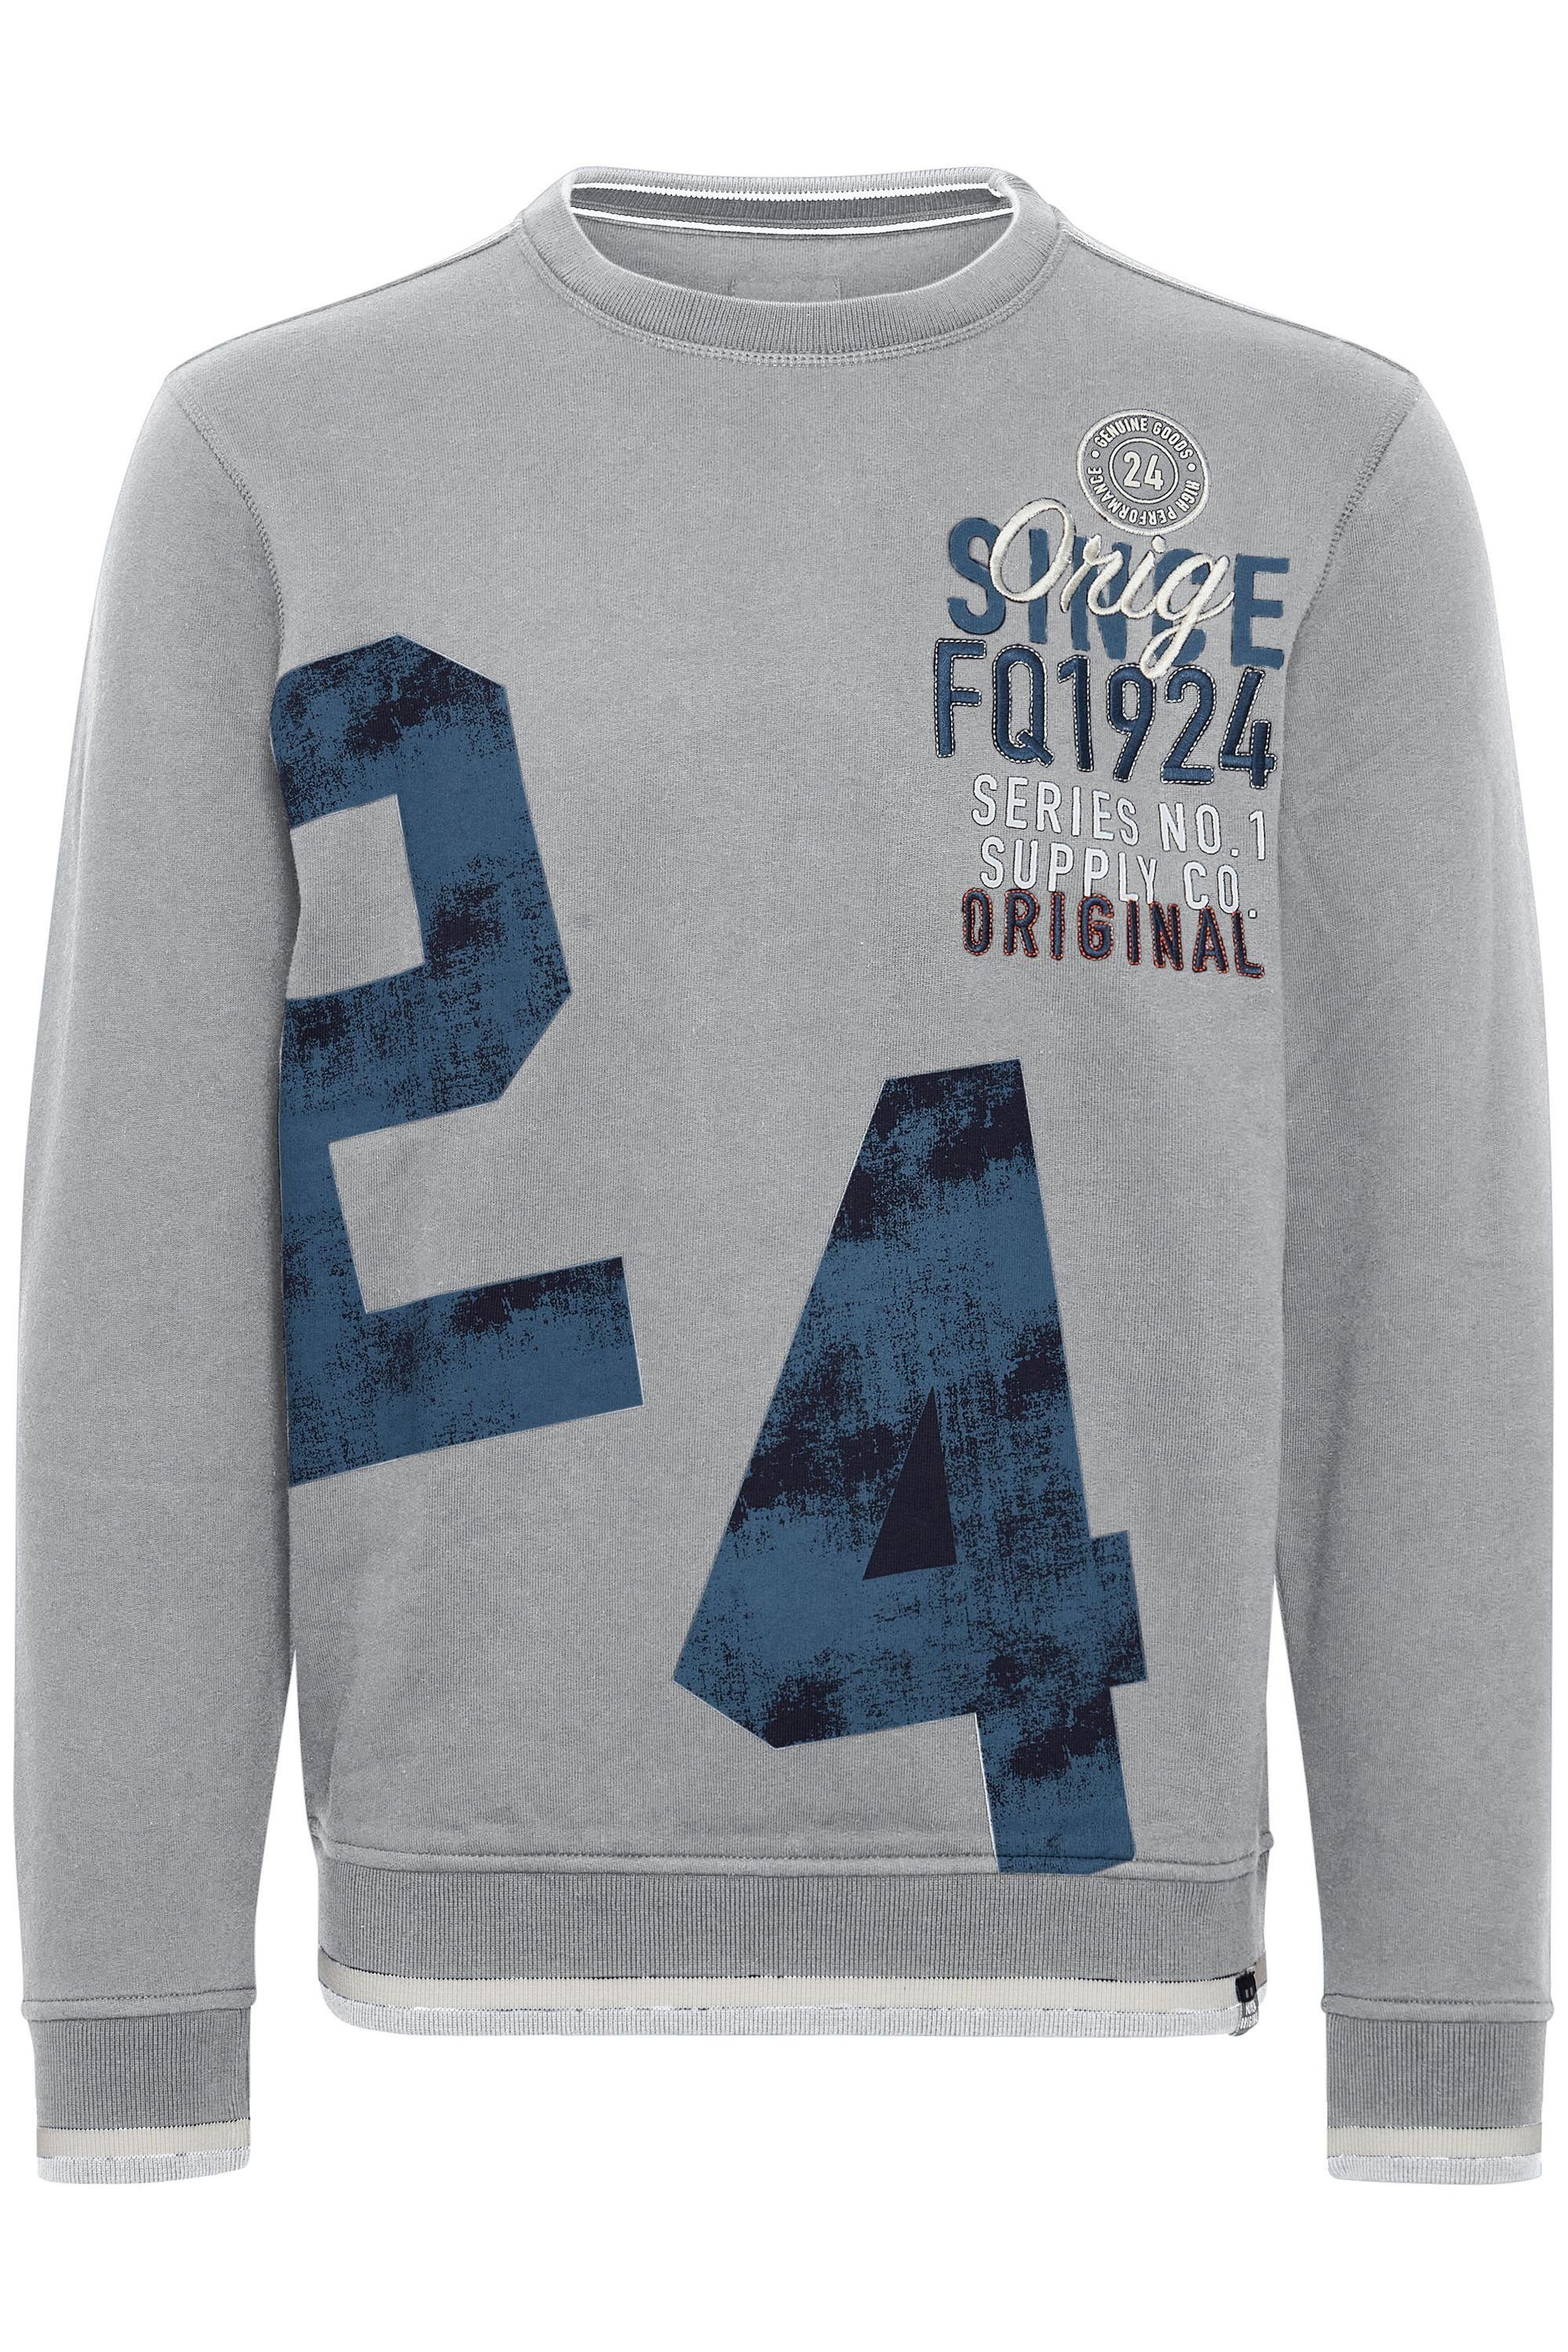 Mix FQ1924 Zink Sweatshirt FQMangus FQ1924